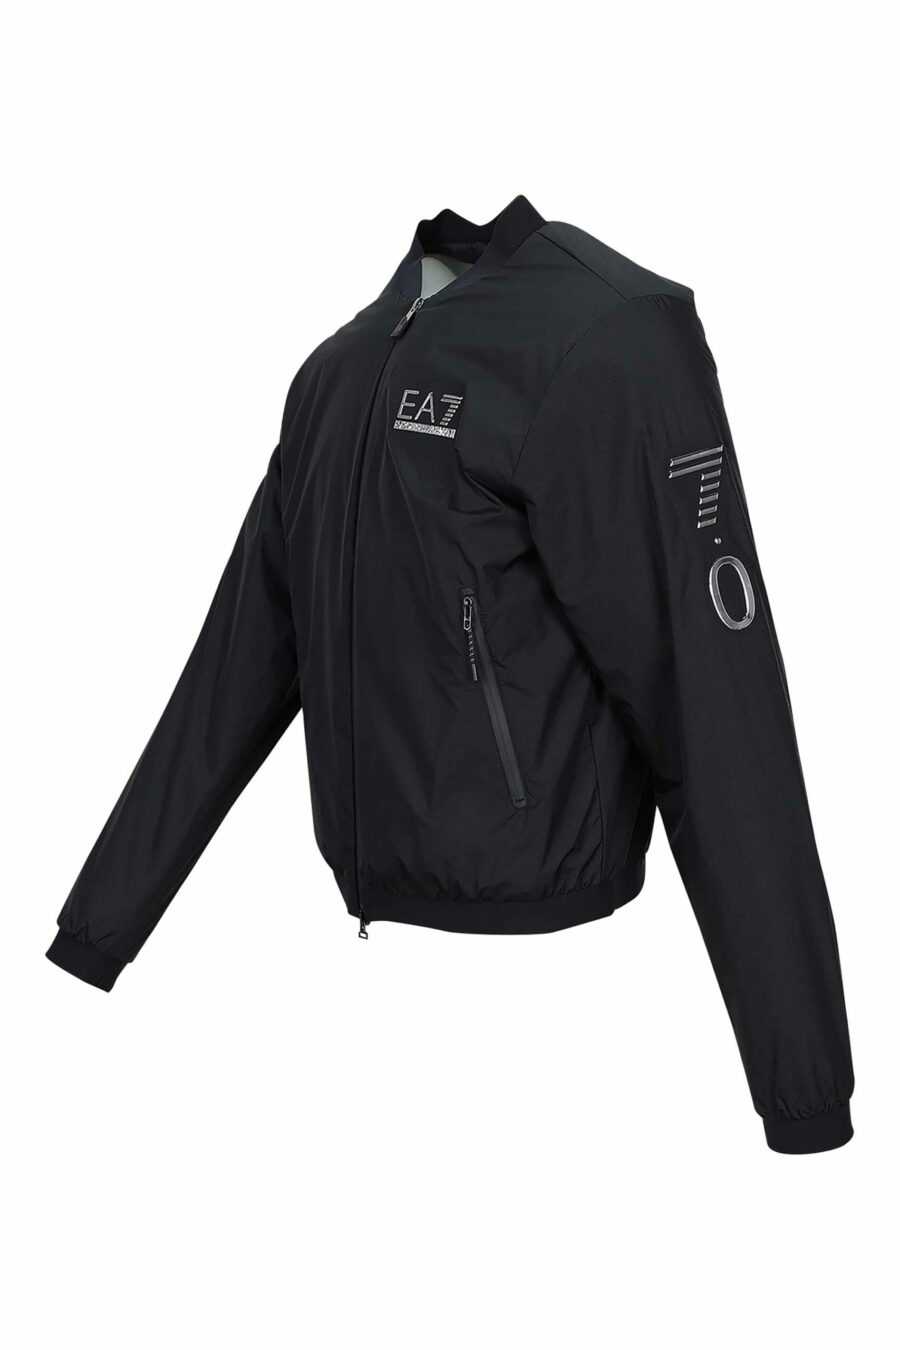 Schwarze Jacke mit "lux identity" Minilogo und seitlichem Logo - 8056787938434 1 skaliert